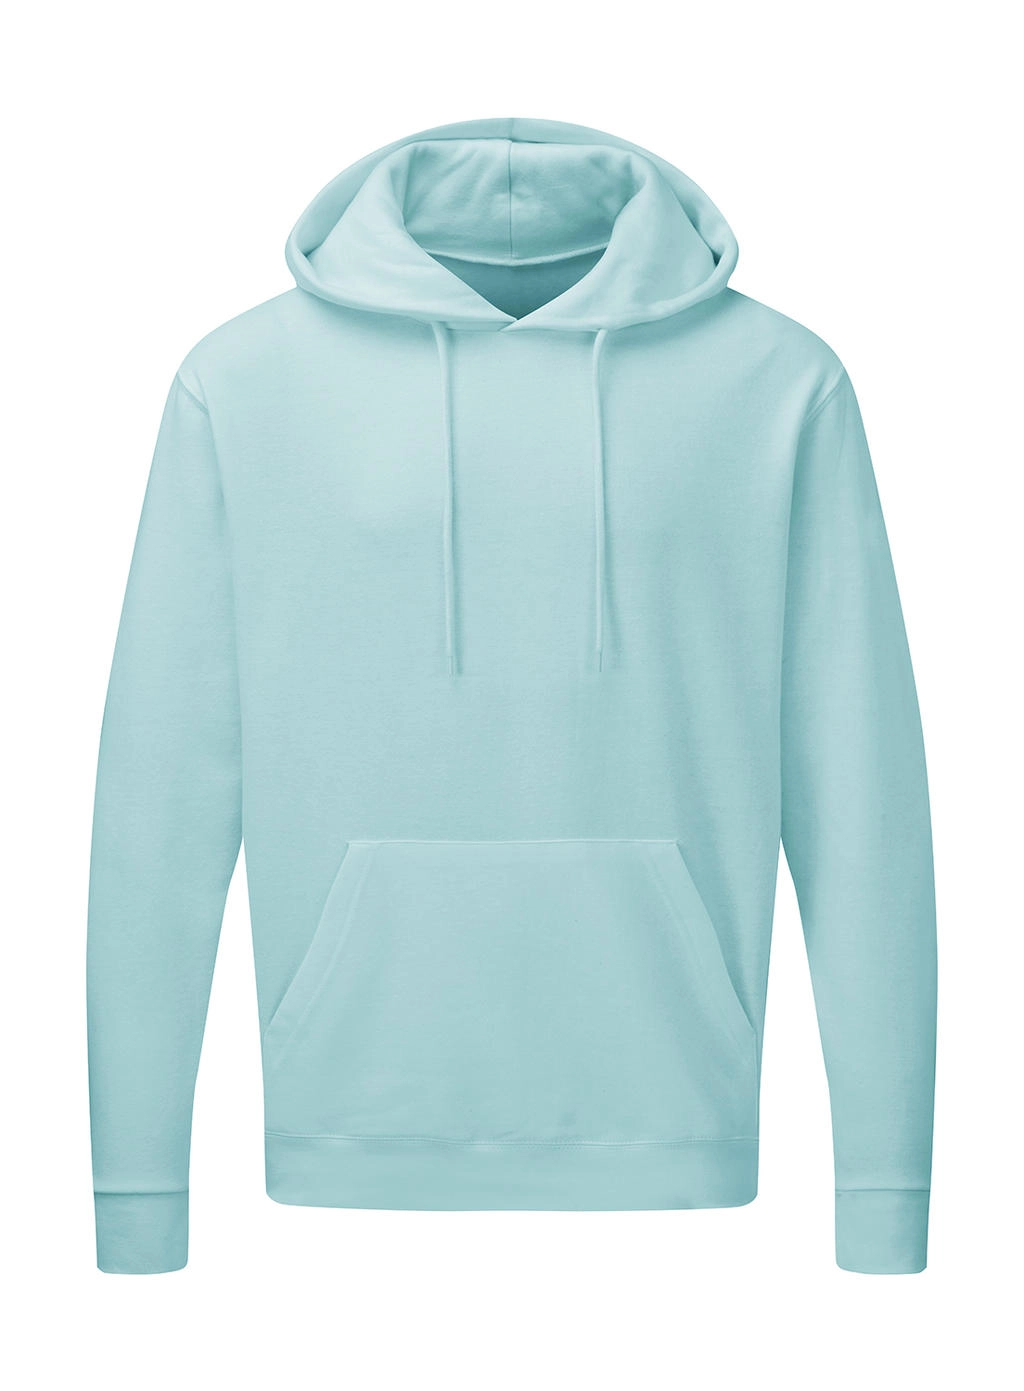 Hooded Sweatshirt Men zum Besticken und Bedrucken in der Farbe Angel Blue mit Ihren Logo, Schriftzug oder Motiv.